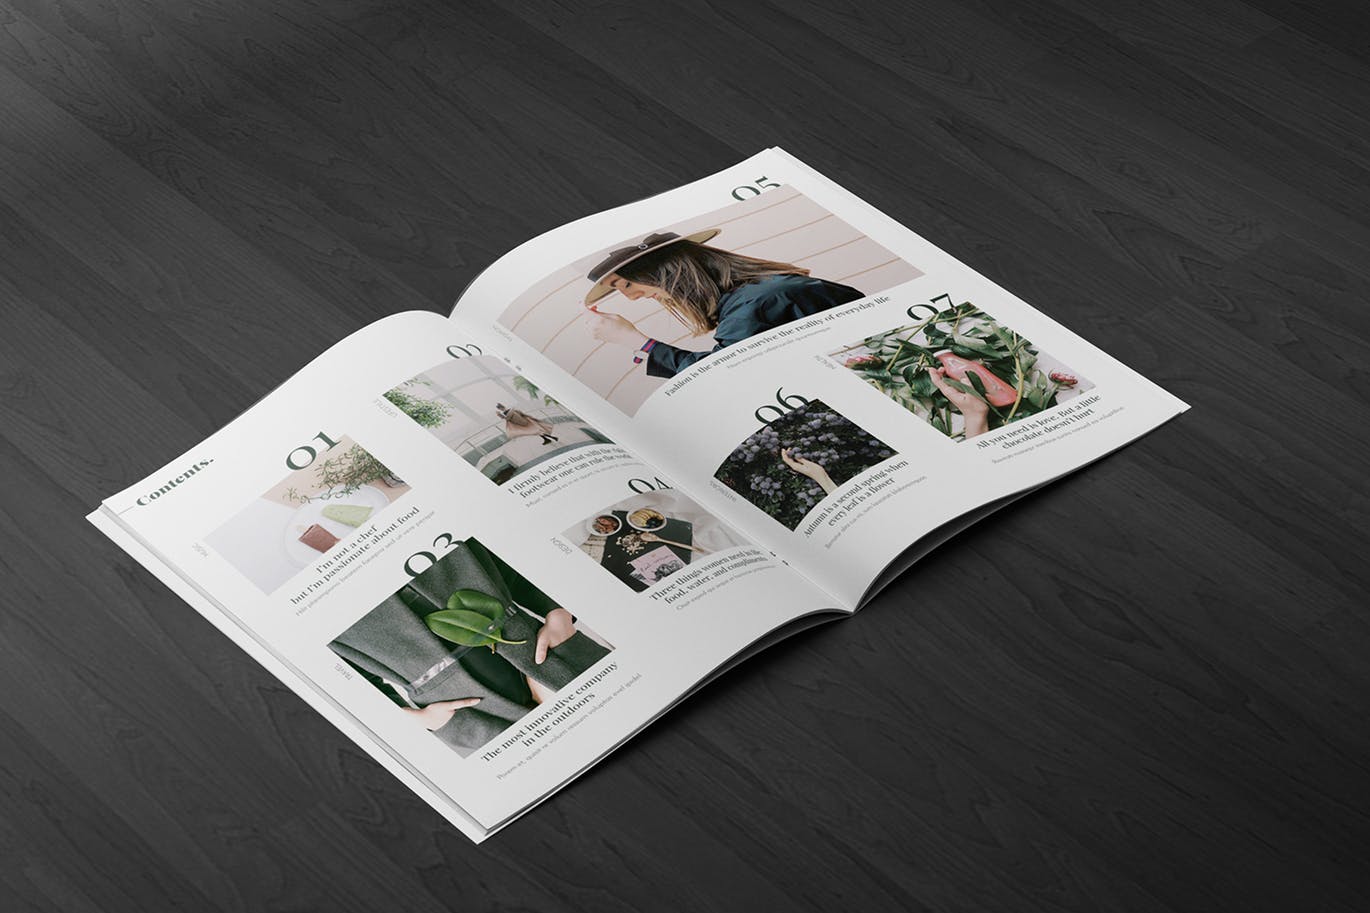 A4宣传小册子/企业画册内页版式设计45度角视图样机蚂蚁素材精选 A4 Brochure Mockup 2 Pages Spread插图(2)